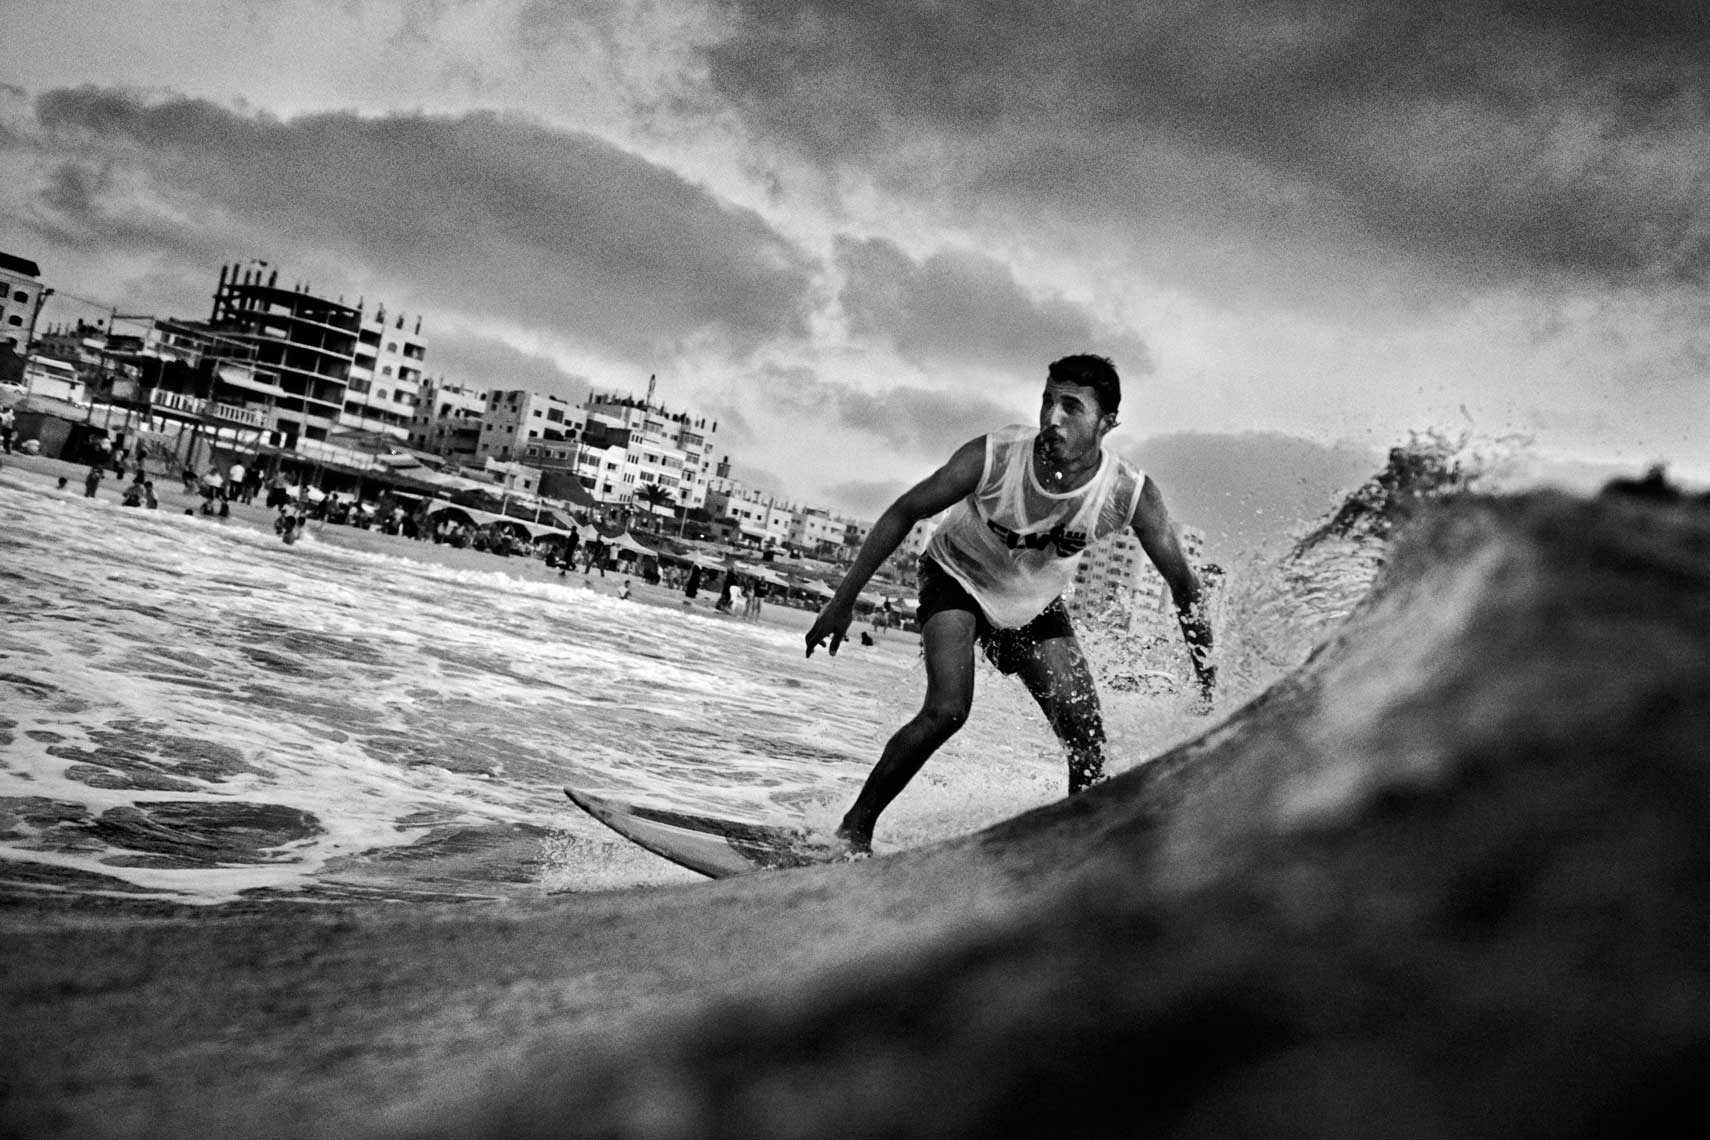 Gaza Surfing